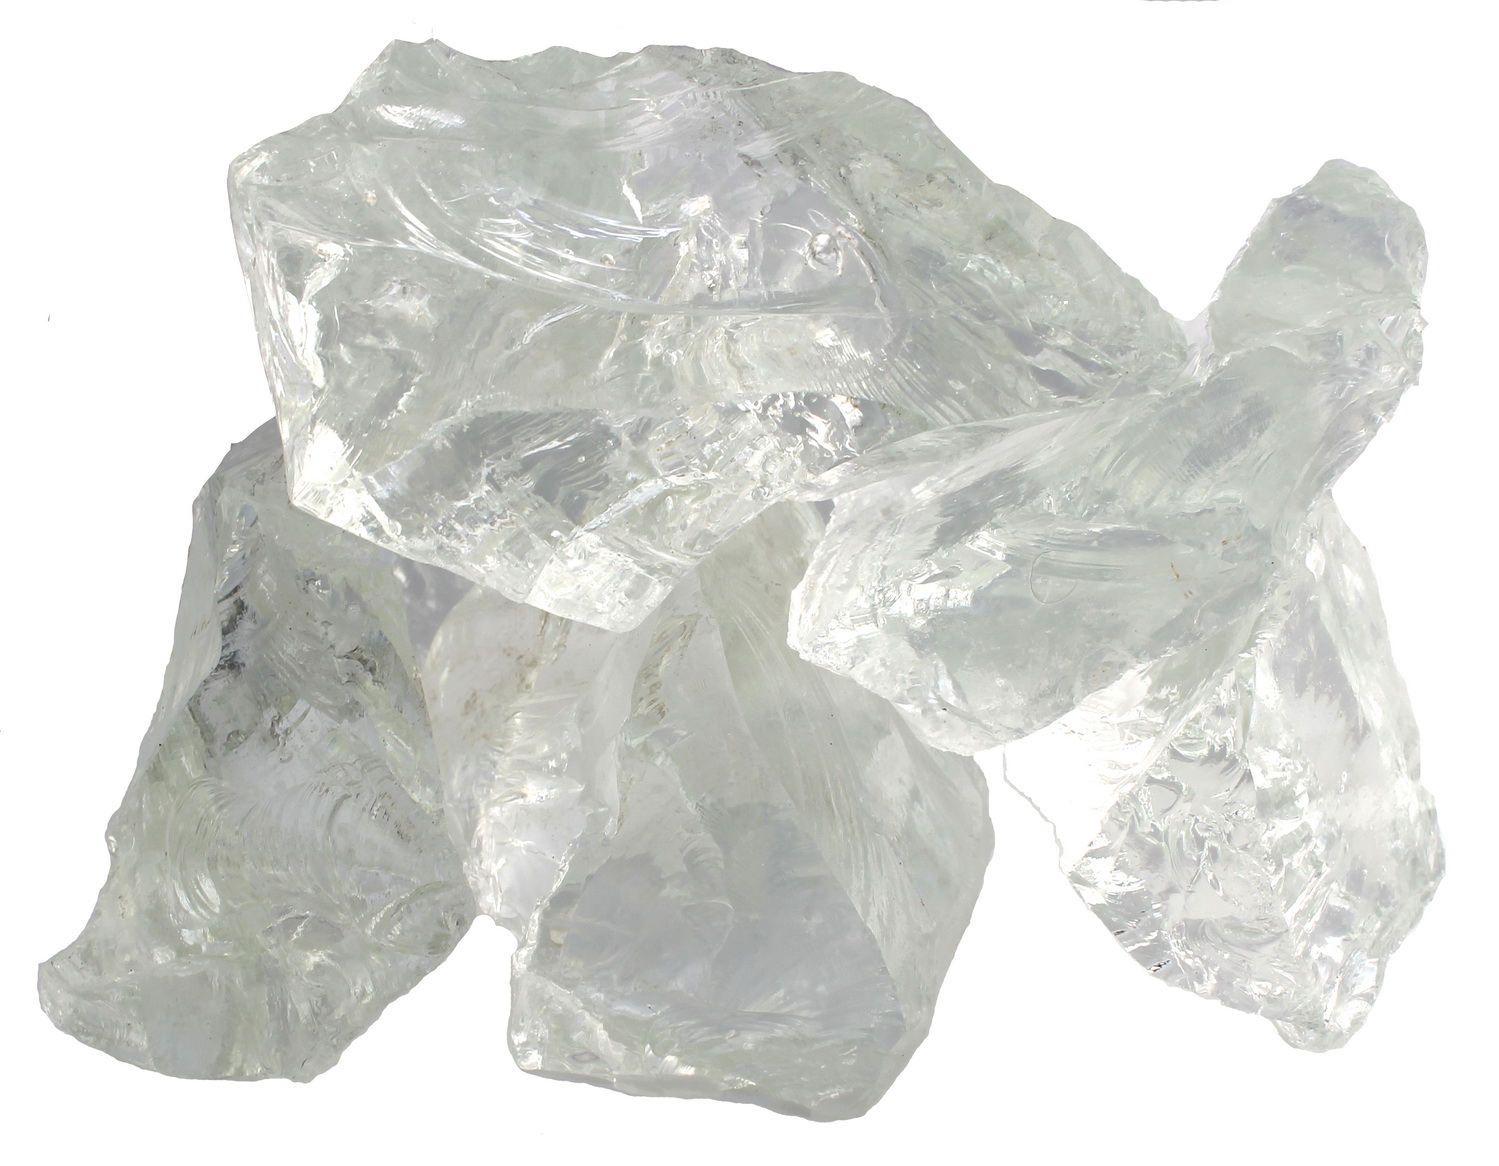 Glass kristal 80-120mm per kg